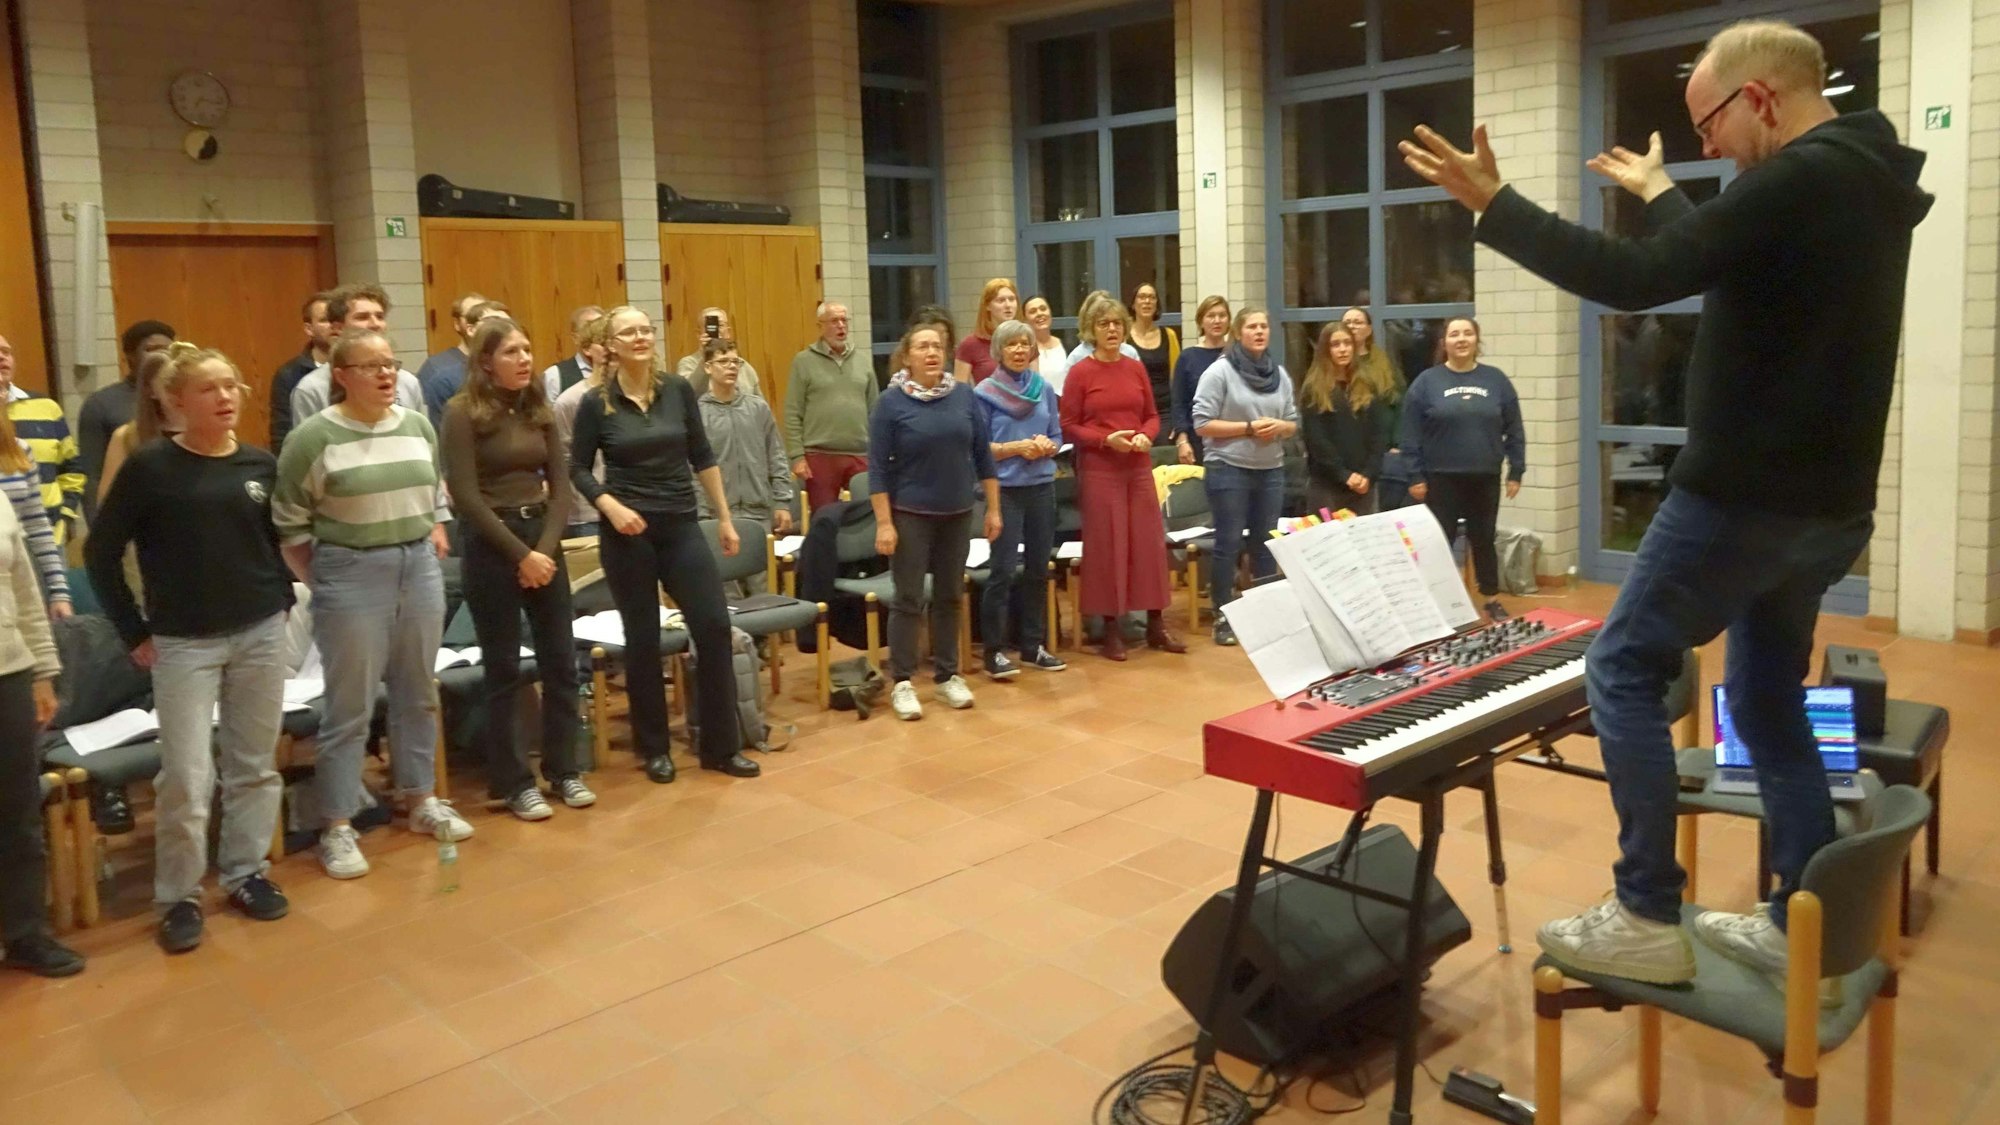 Eine besondere Chorprobe in der Meckenheimer Friedenskirche: Zwei Chöre der evangelischen Kirche Meckenheim proben das Musical "Bethlehem" mit dem Komponisten Dieter Falk (auf dem Stuhl rechts).